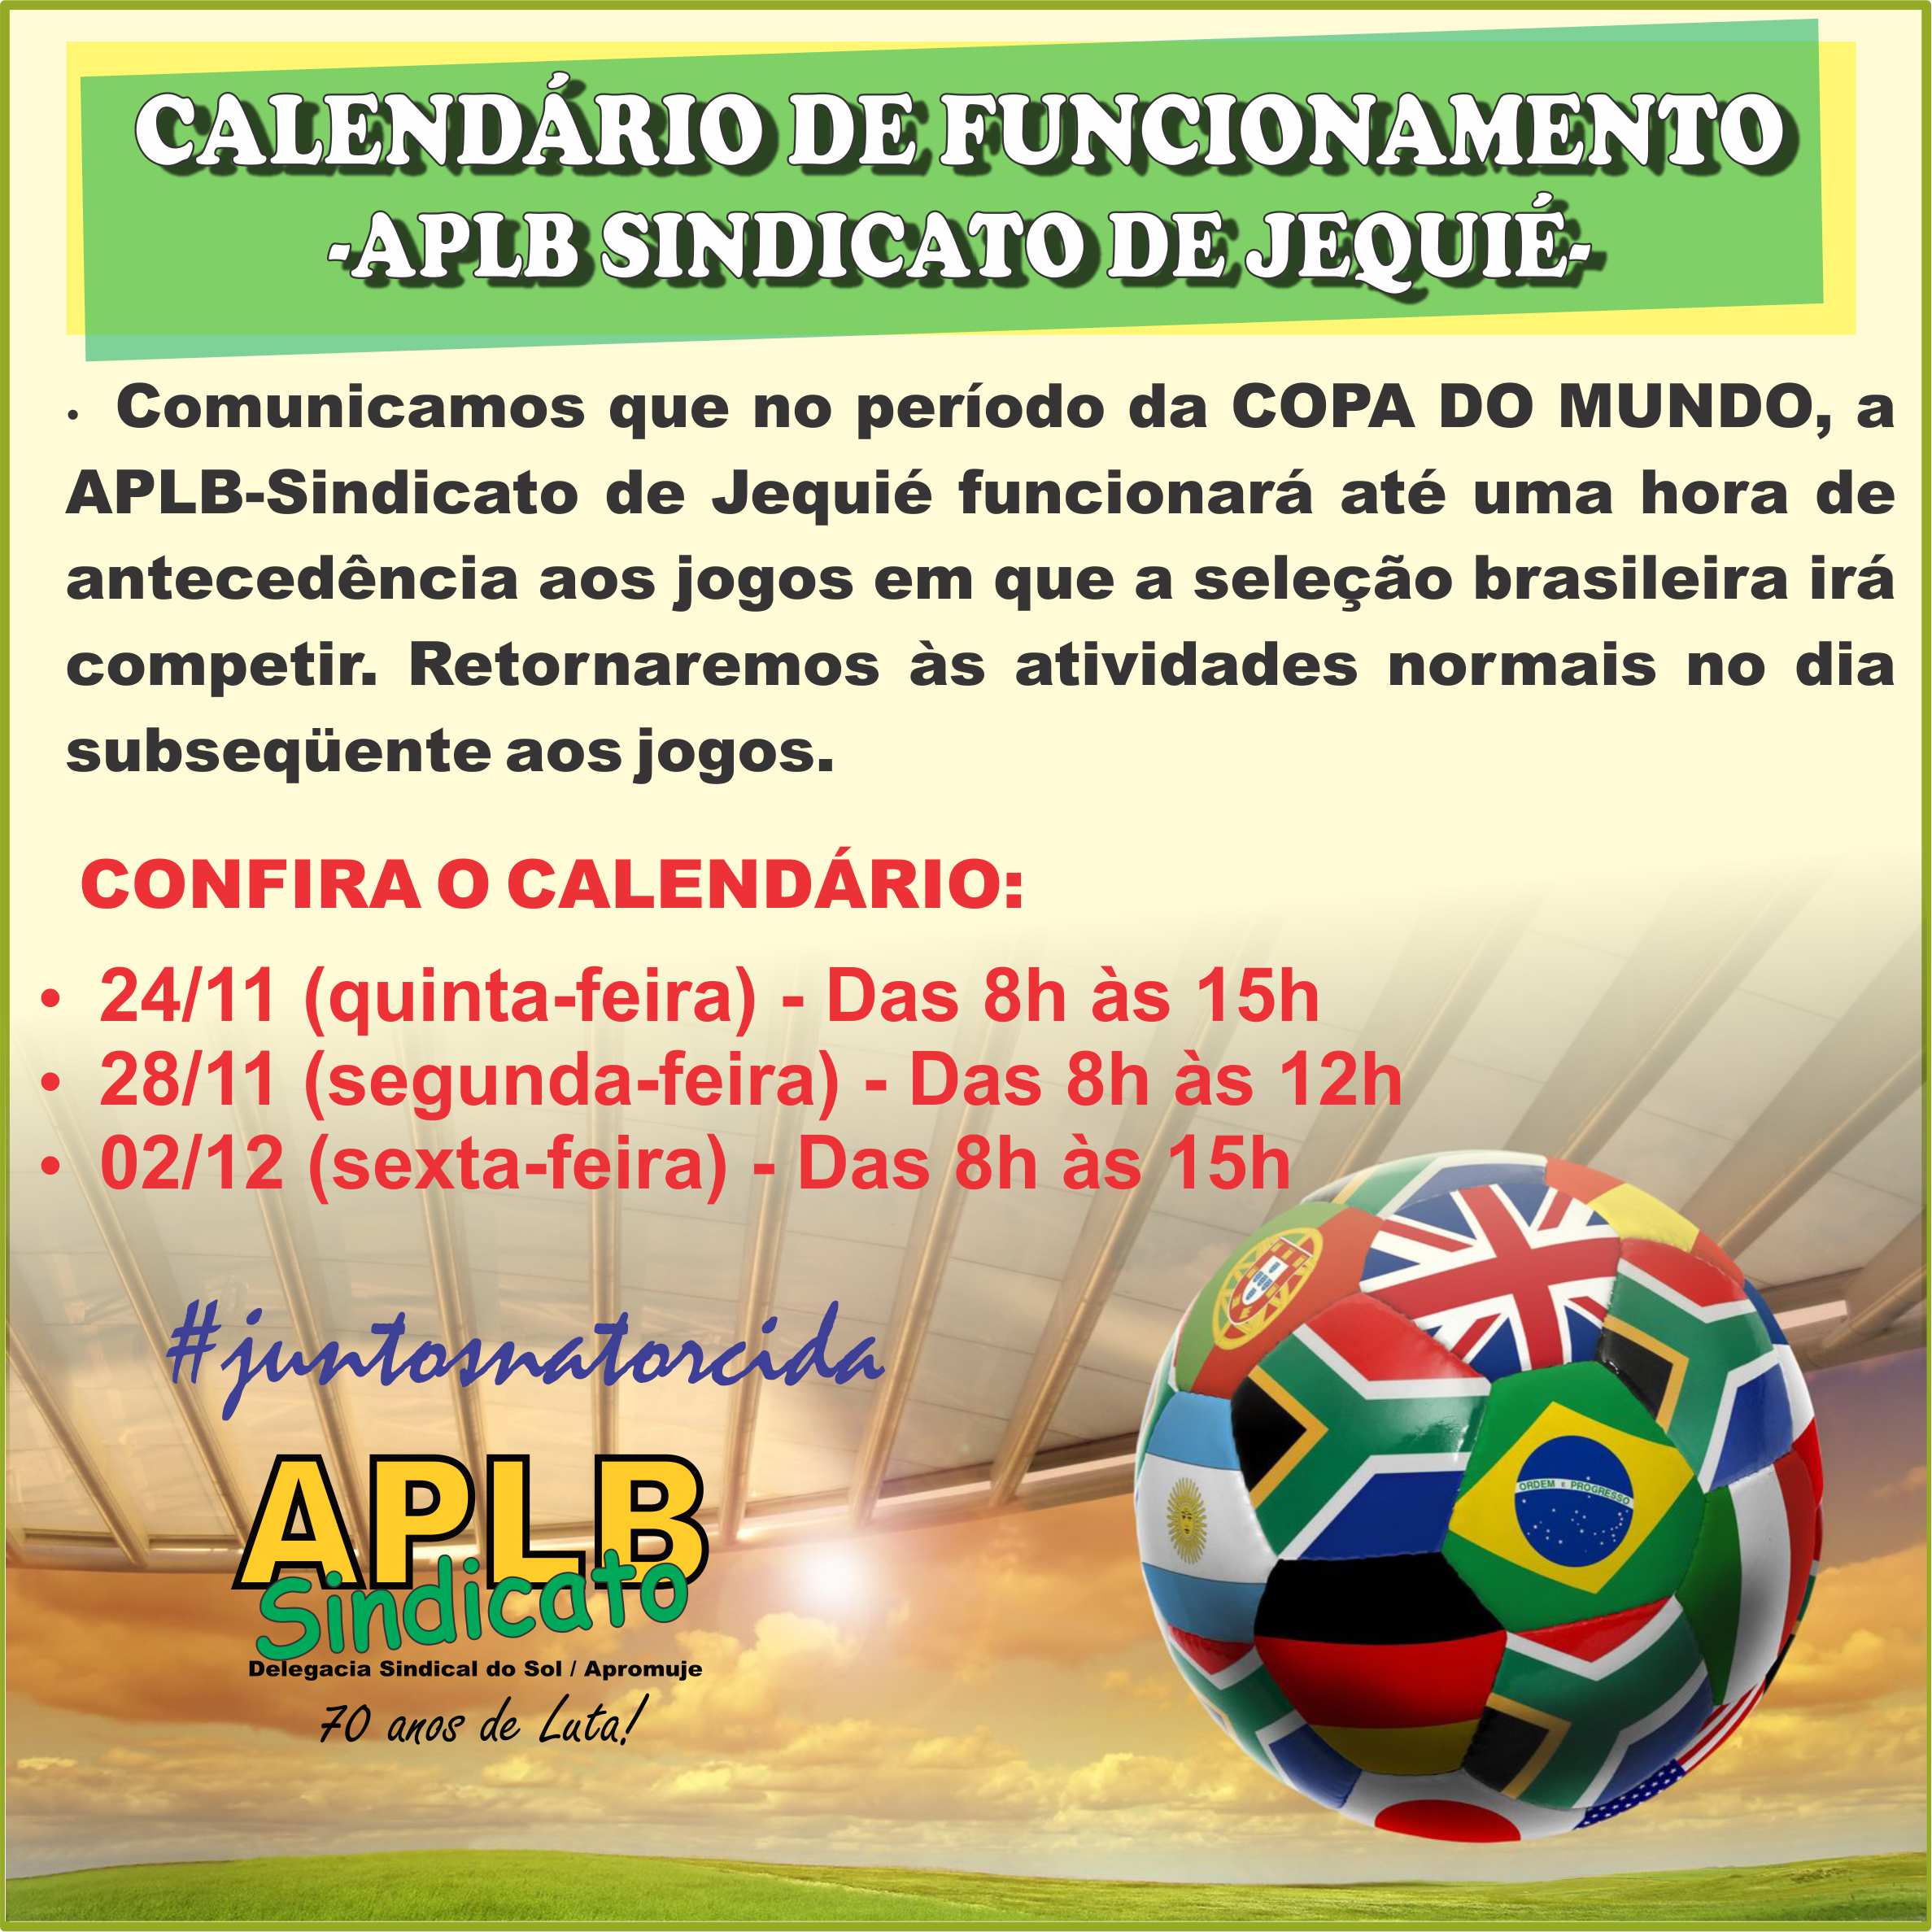 Confira o calendário de funcionamento da APLB-Sindicato no período da COPA DO MUNDO.